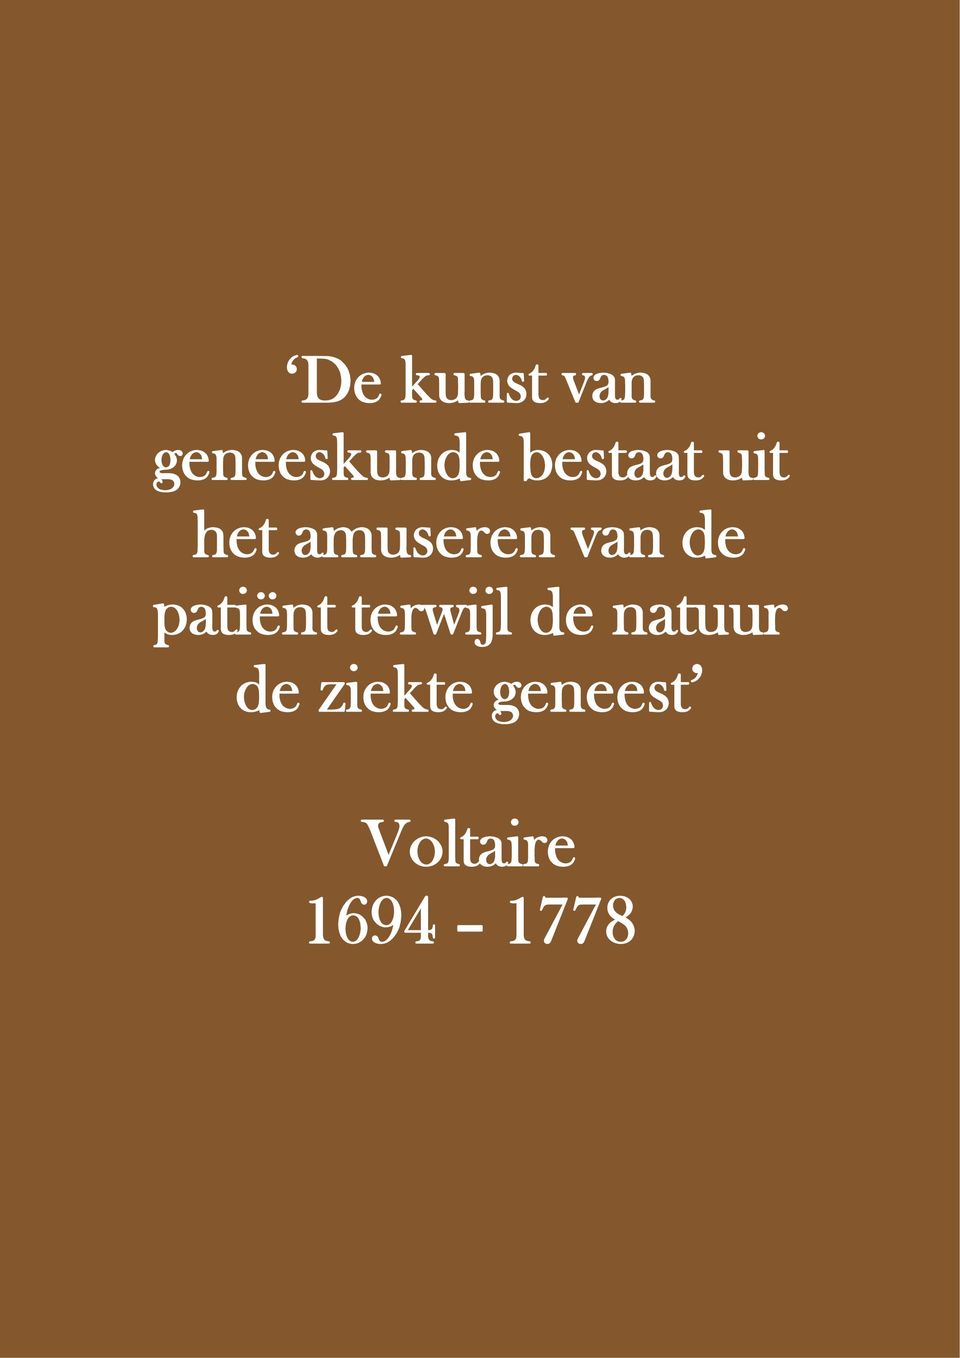 natuur de ziekte geneest Voltaire 1694